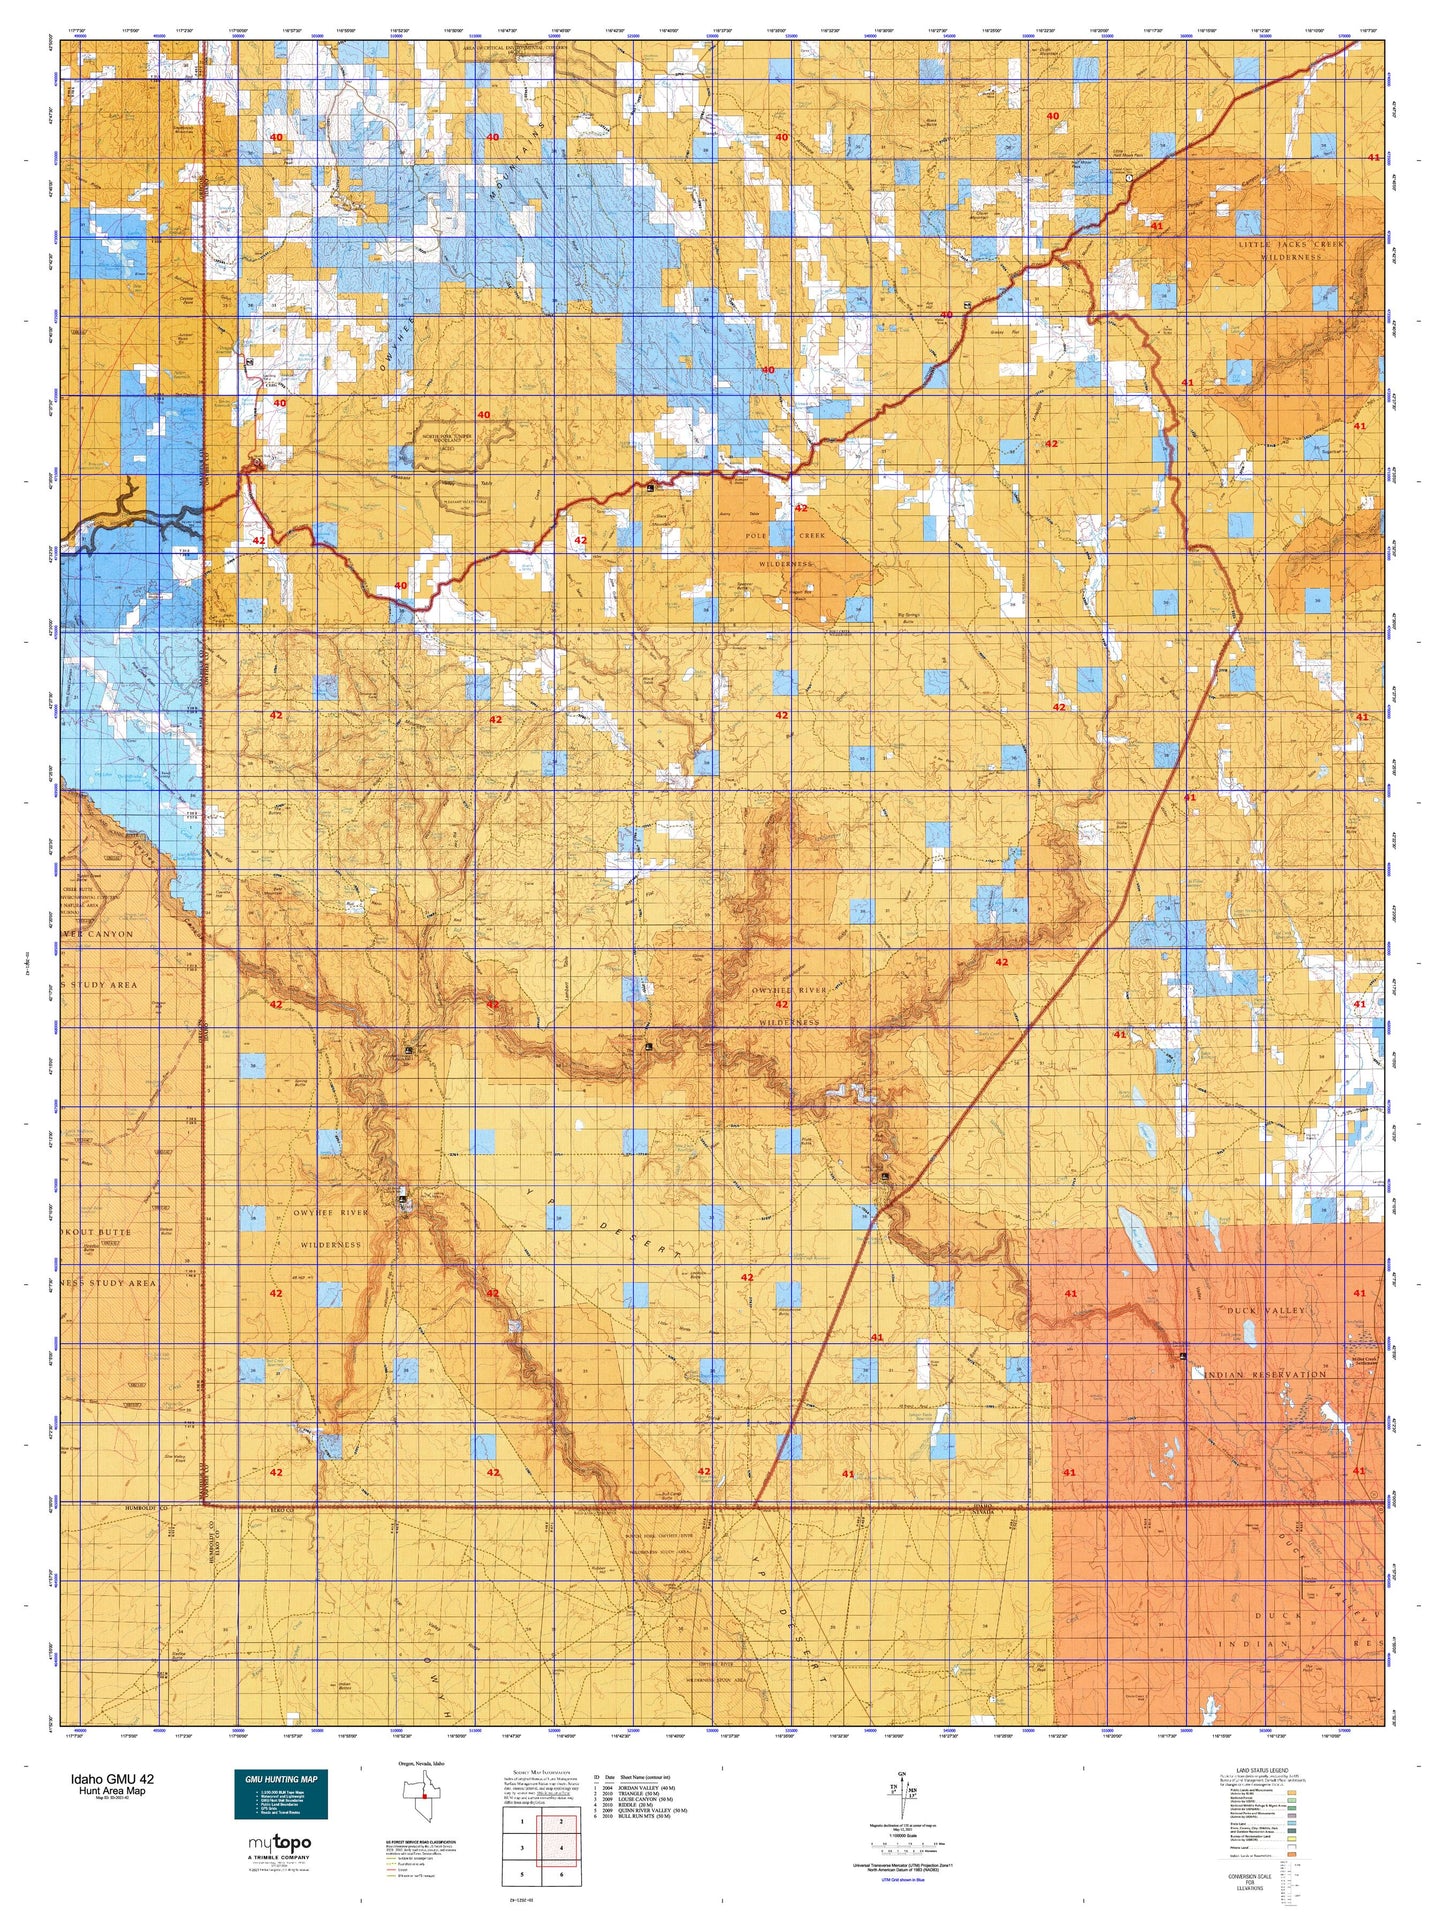 Idaho GMU 42 Map Image